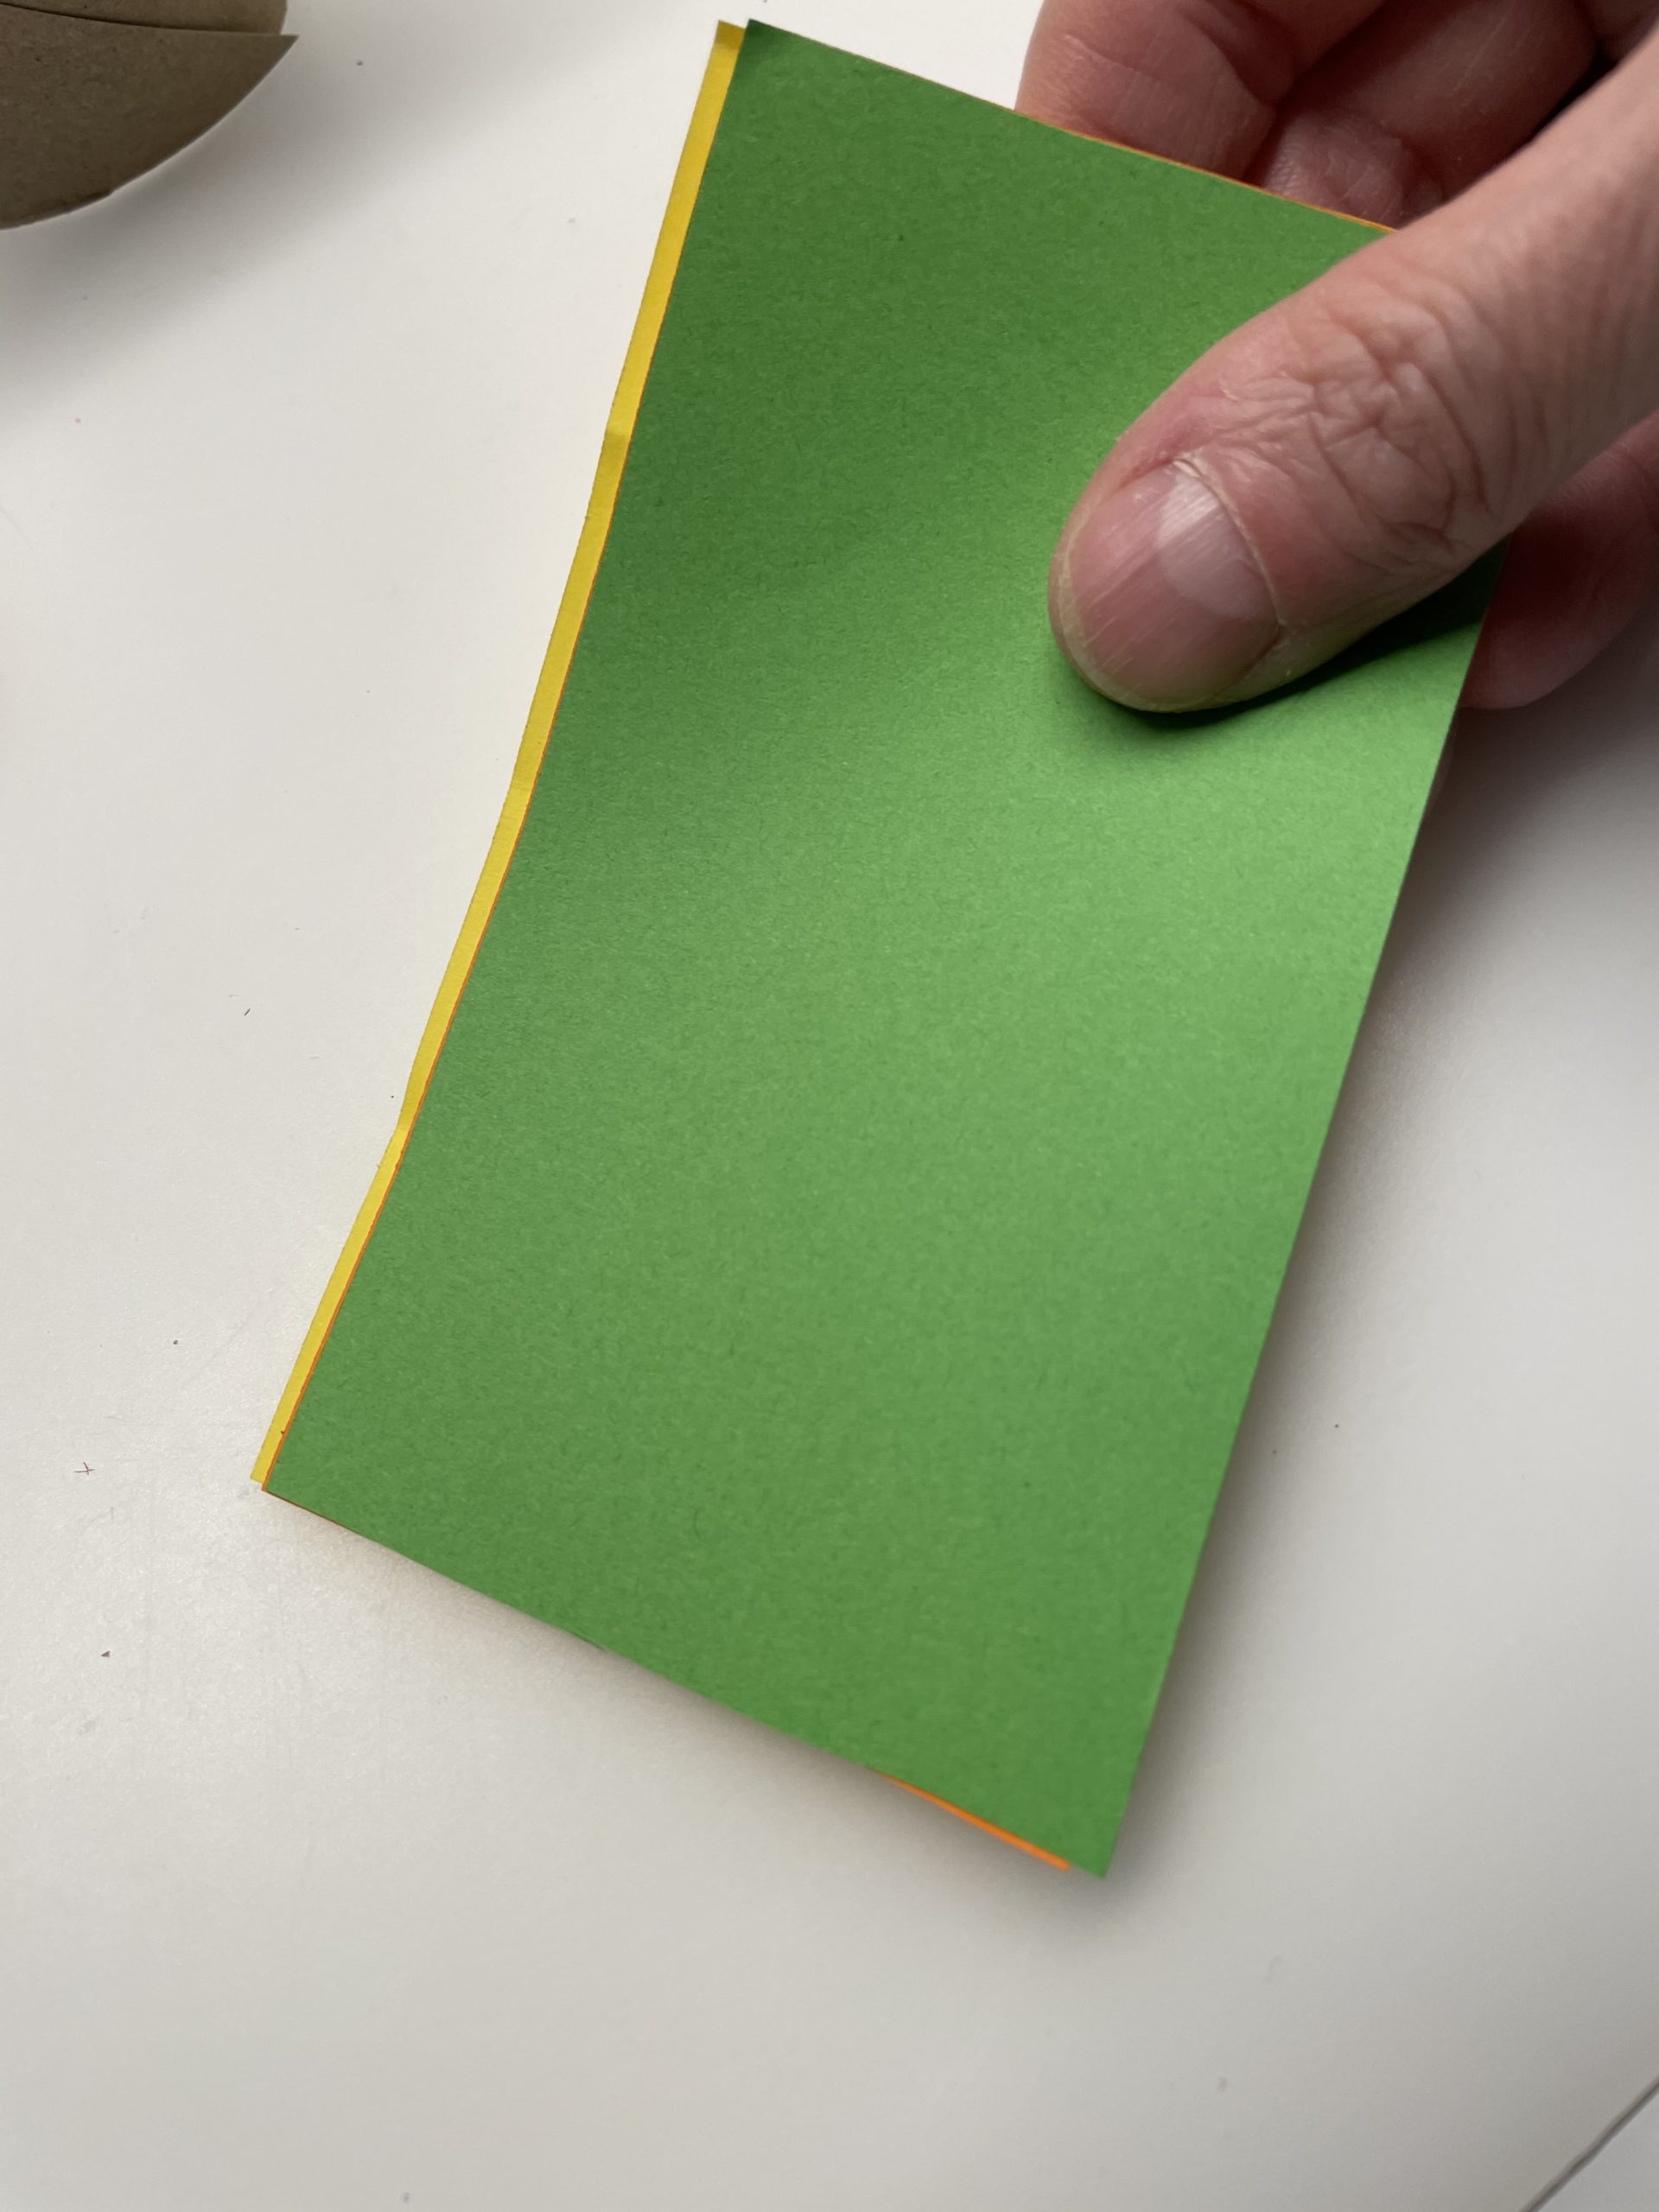 Bild zum Schritt 3 für die Kinder-Beschäftigung: 'Anschließend legt ihr das gelbe, orange und grüne Papier aufeinander....'